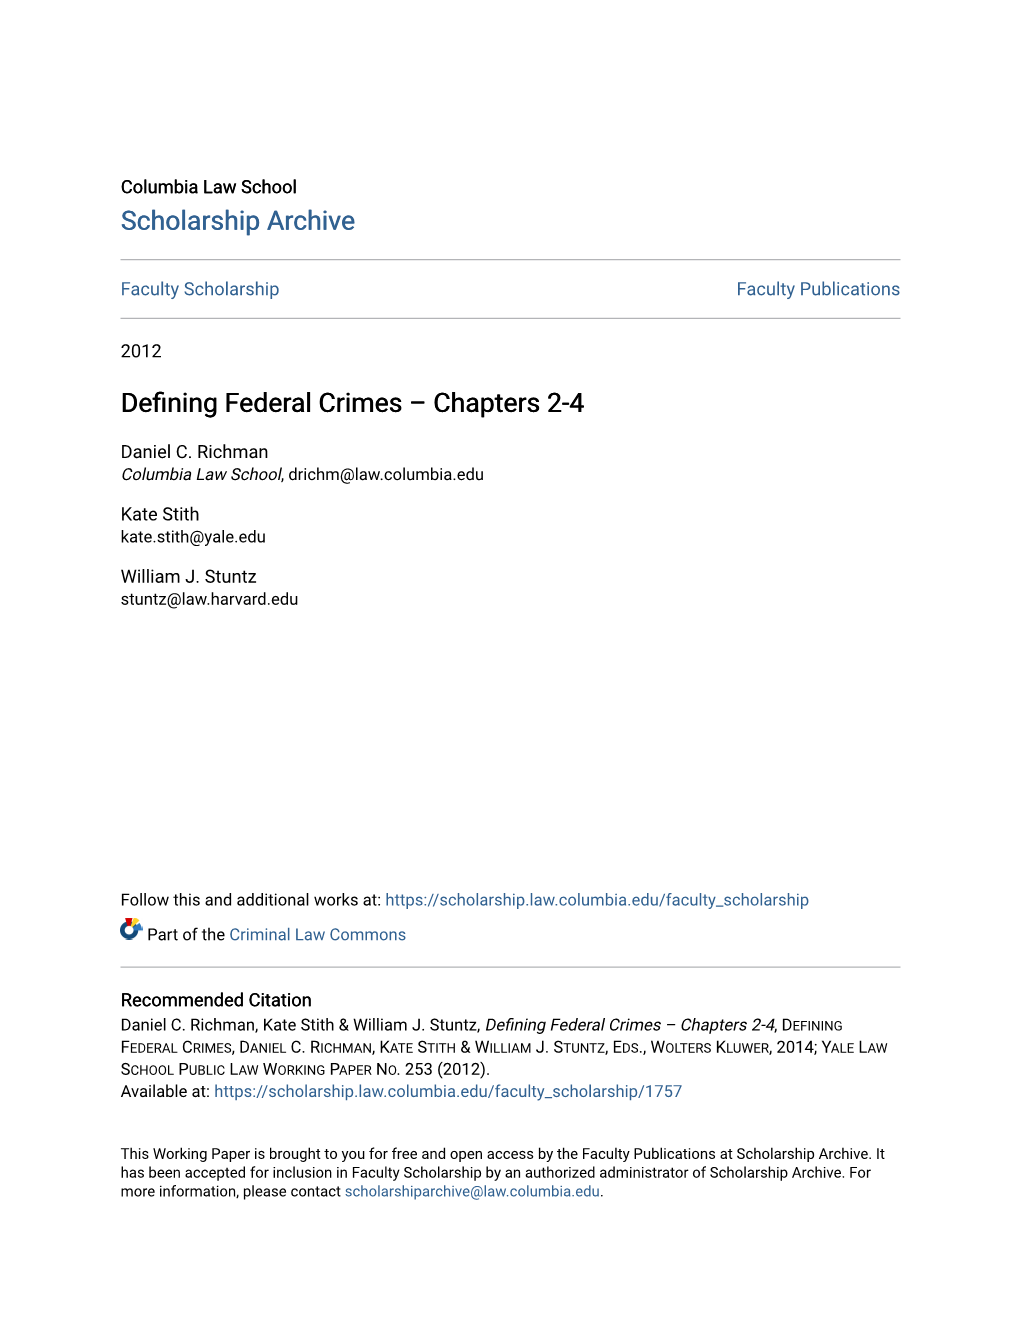 Defining Federal Crimes, Daniel C